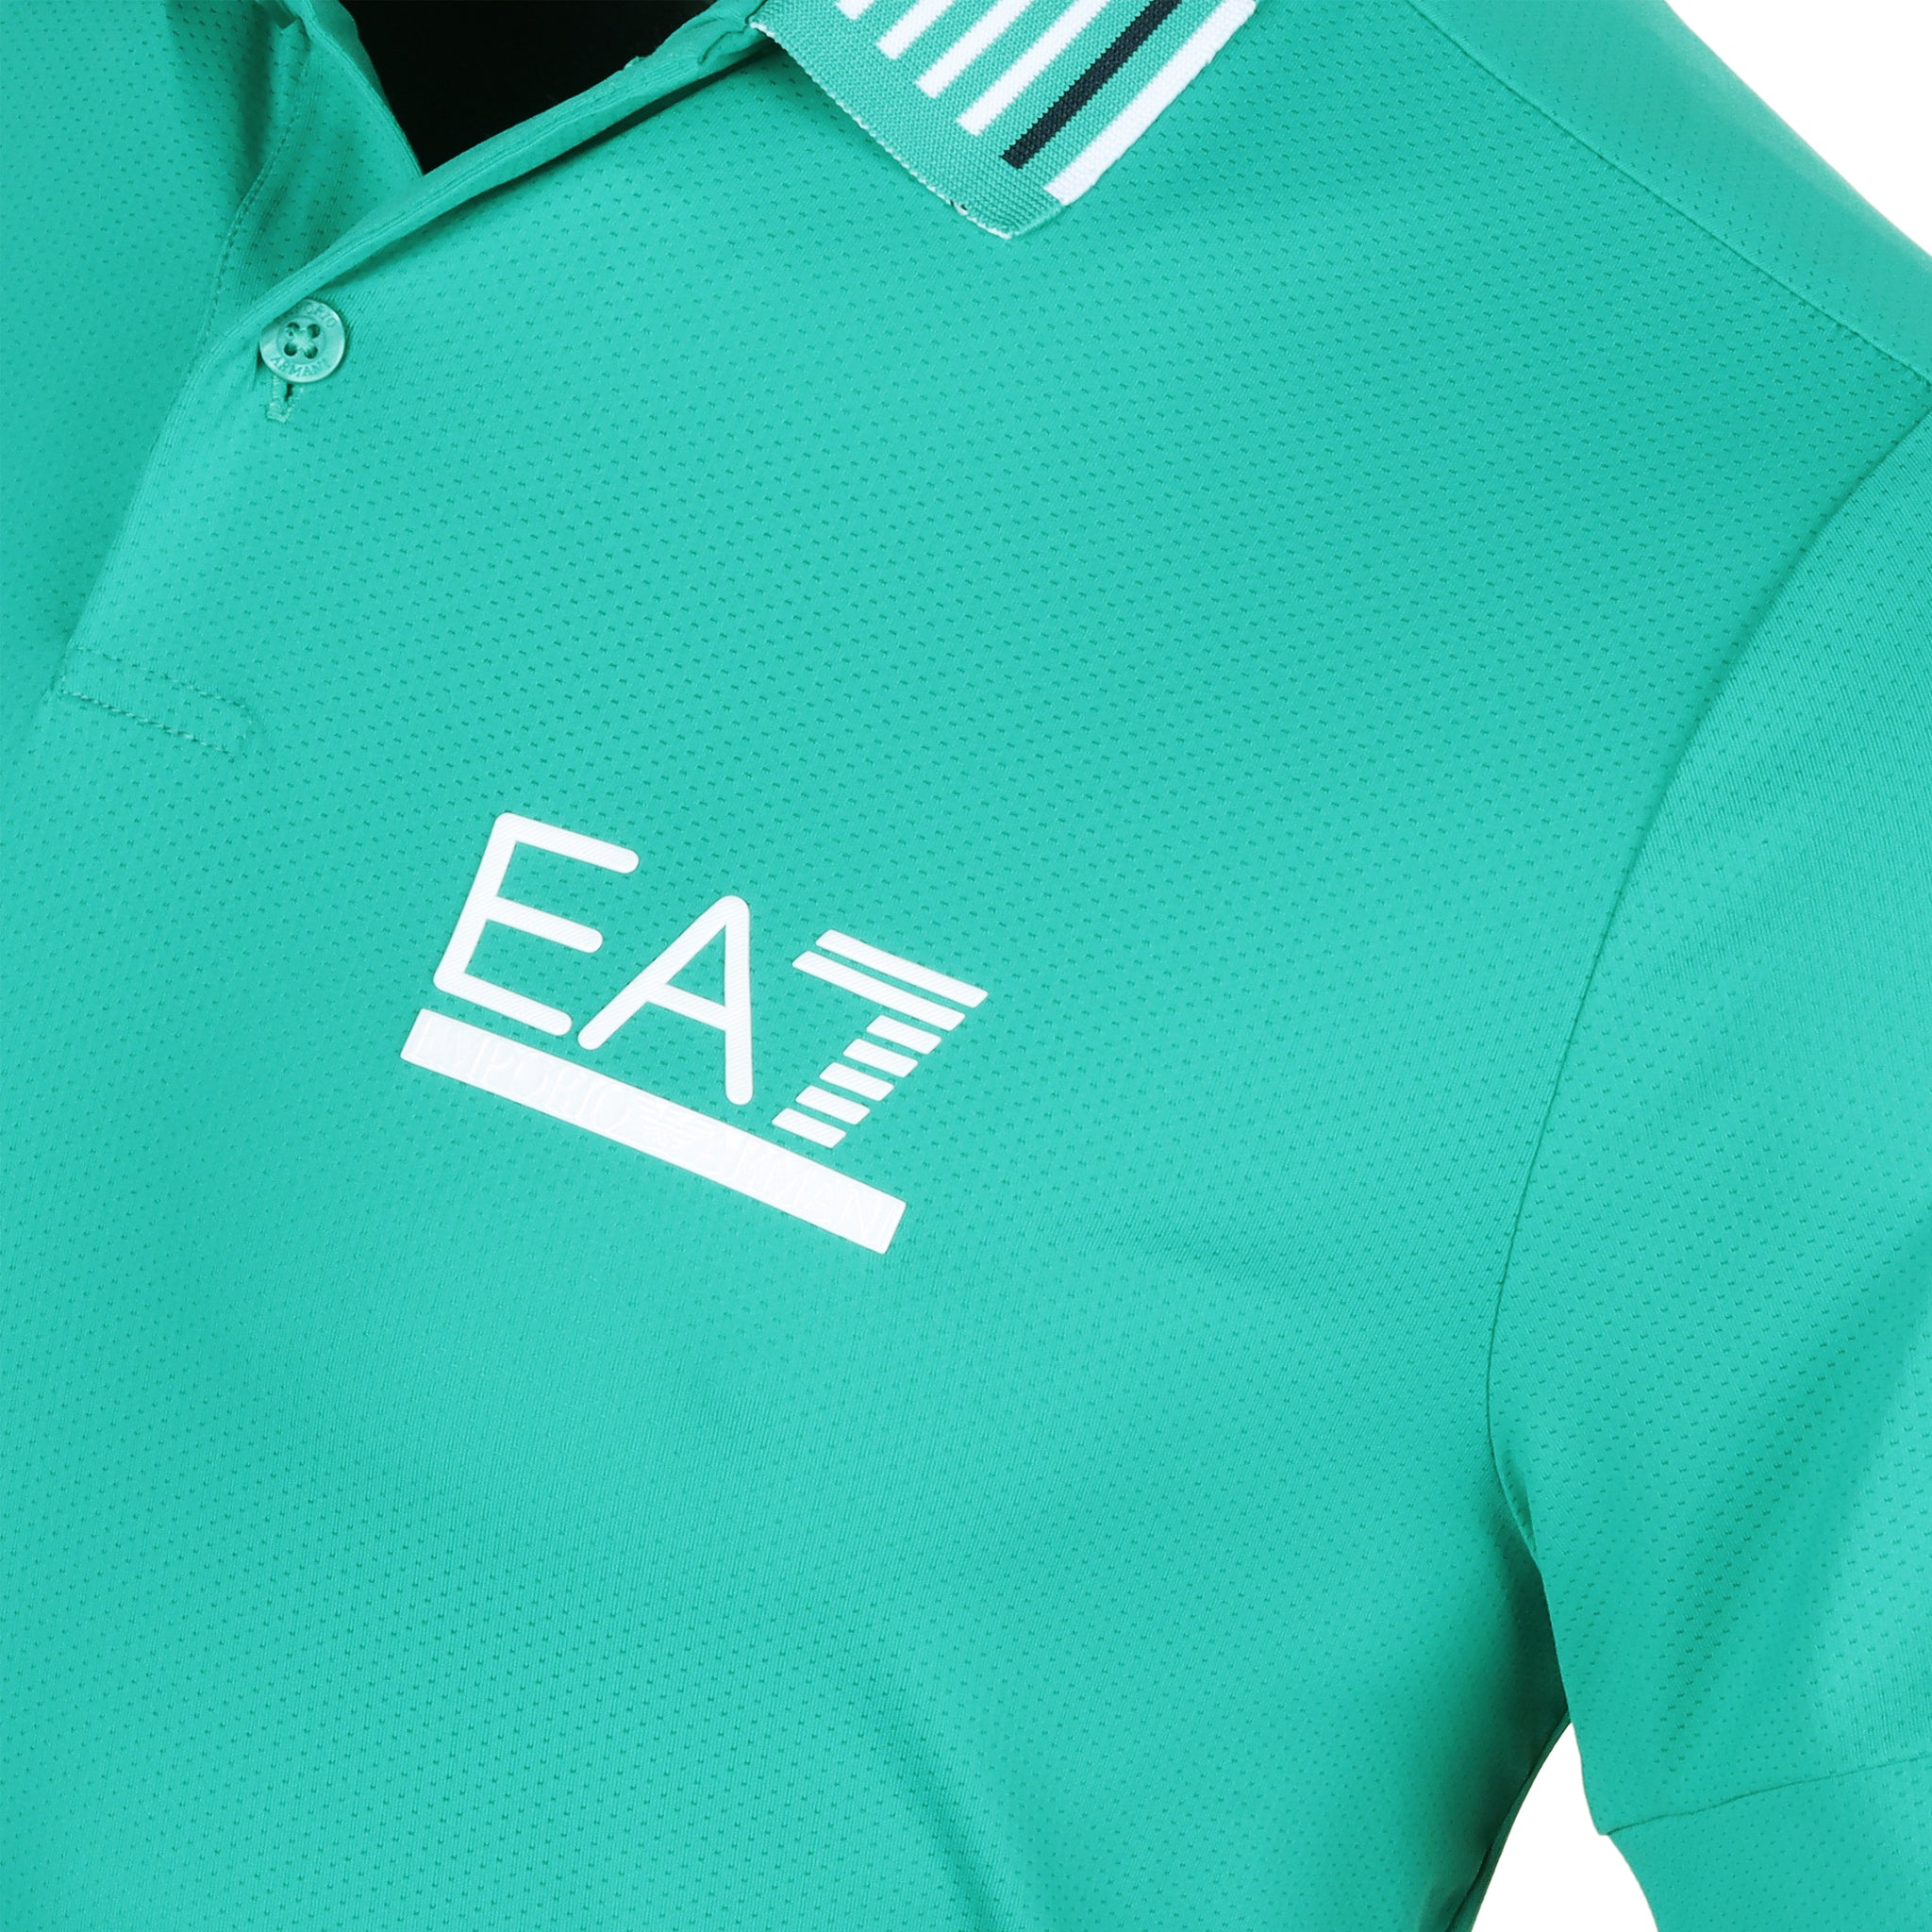 Emporio Armani EA7 Golf Ventus7 Contrast Detail Polo Shirt